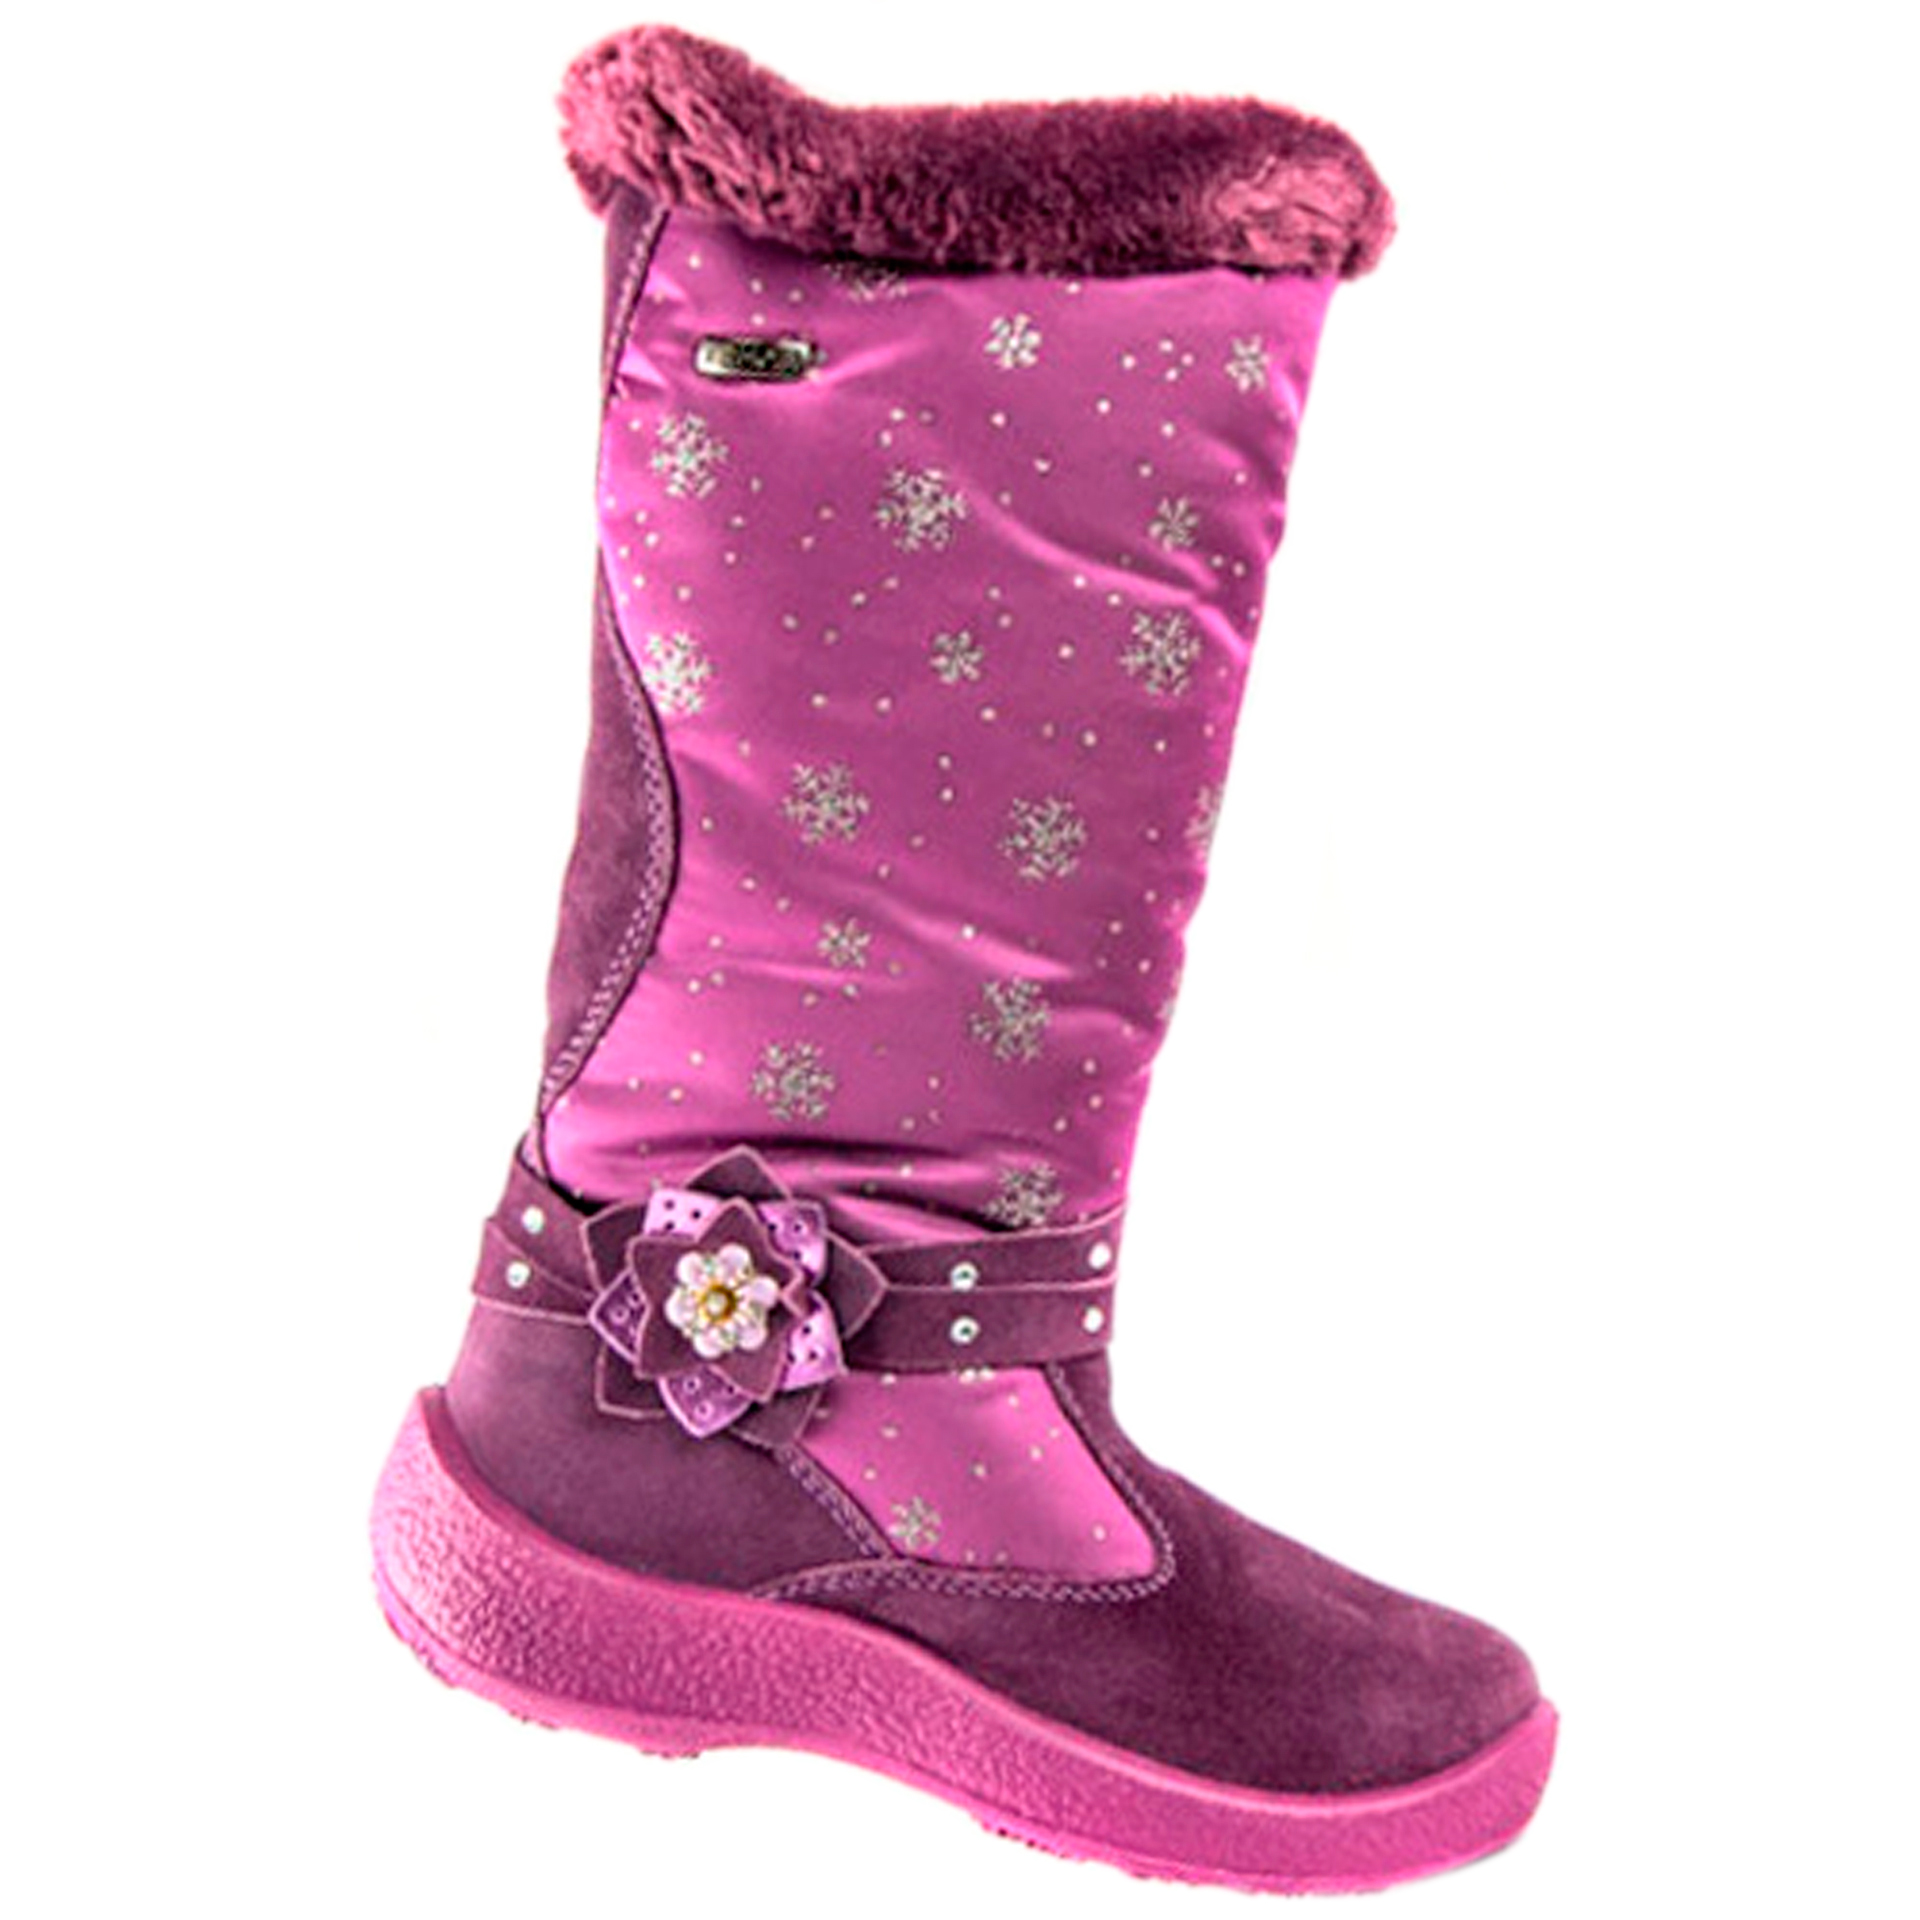 Floare Зимові чоботи (1321) для дівчинки, матеріал Мембрана, Фіолетовий колір, 31-36 розміри